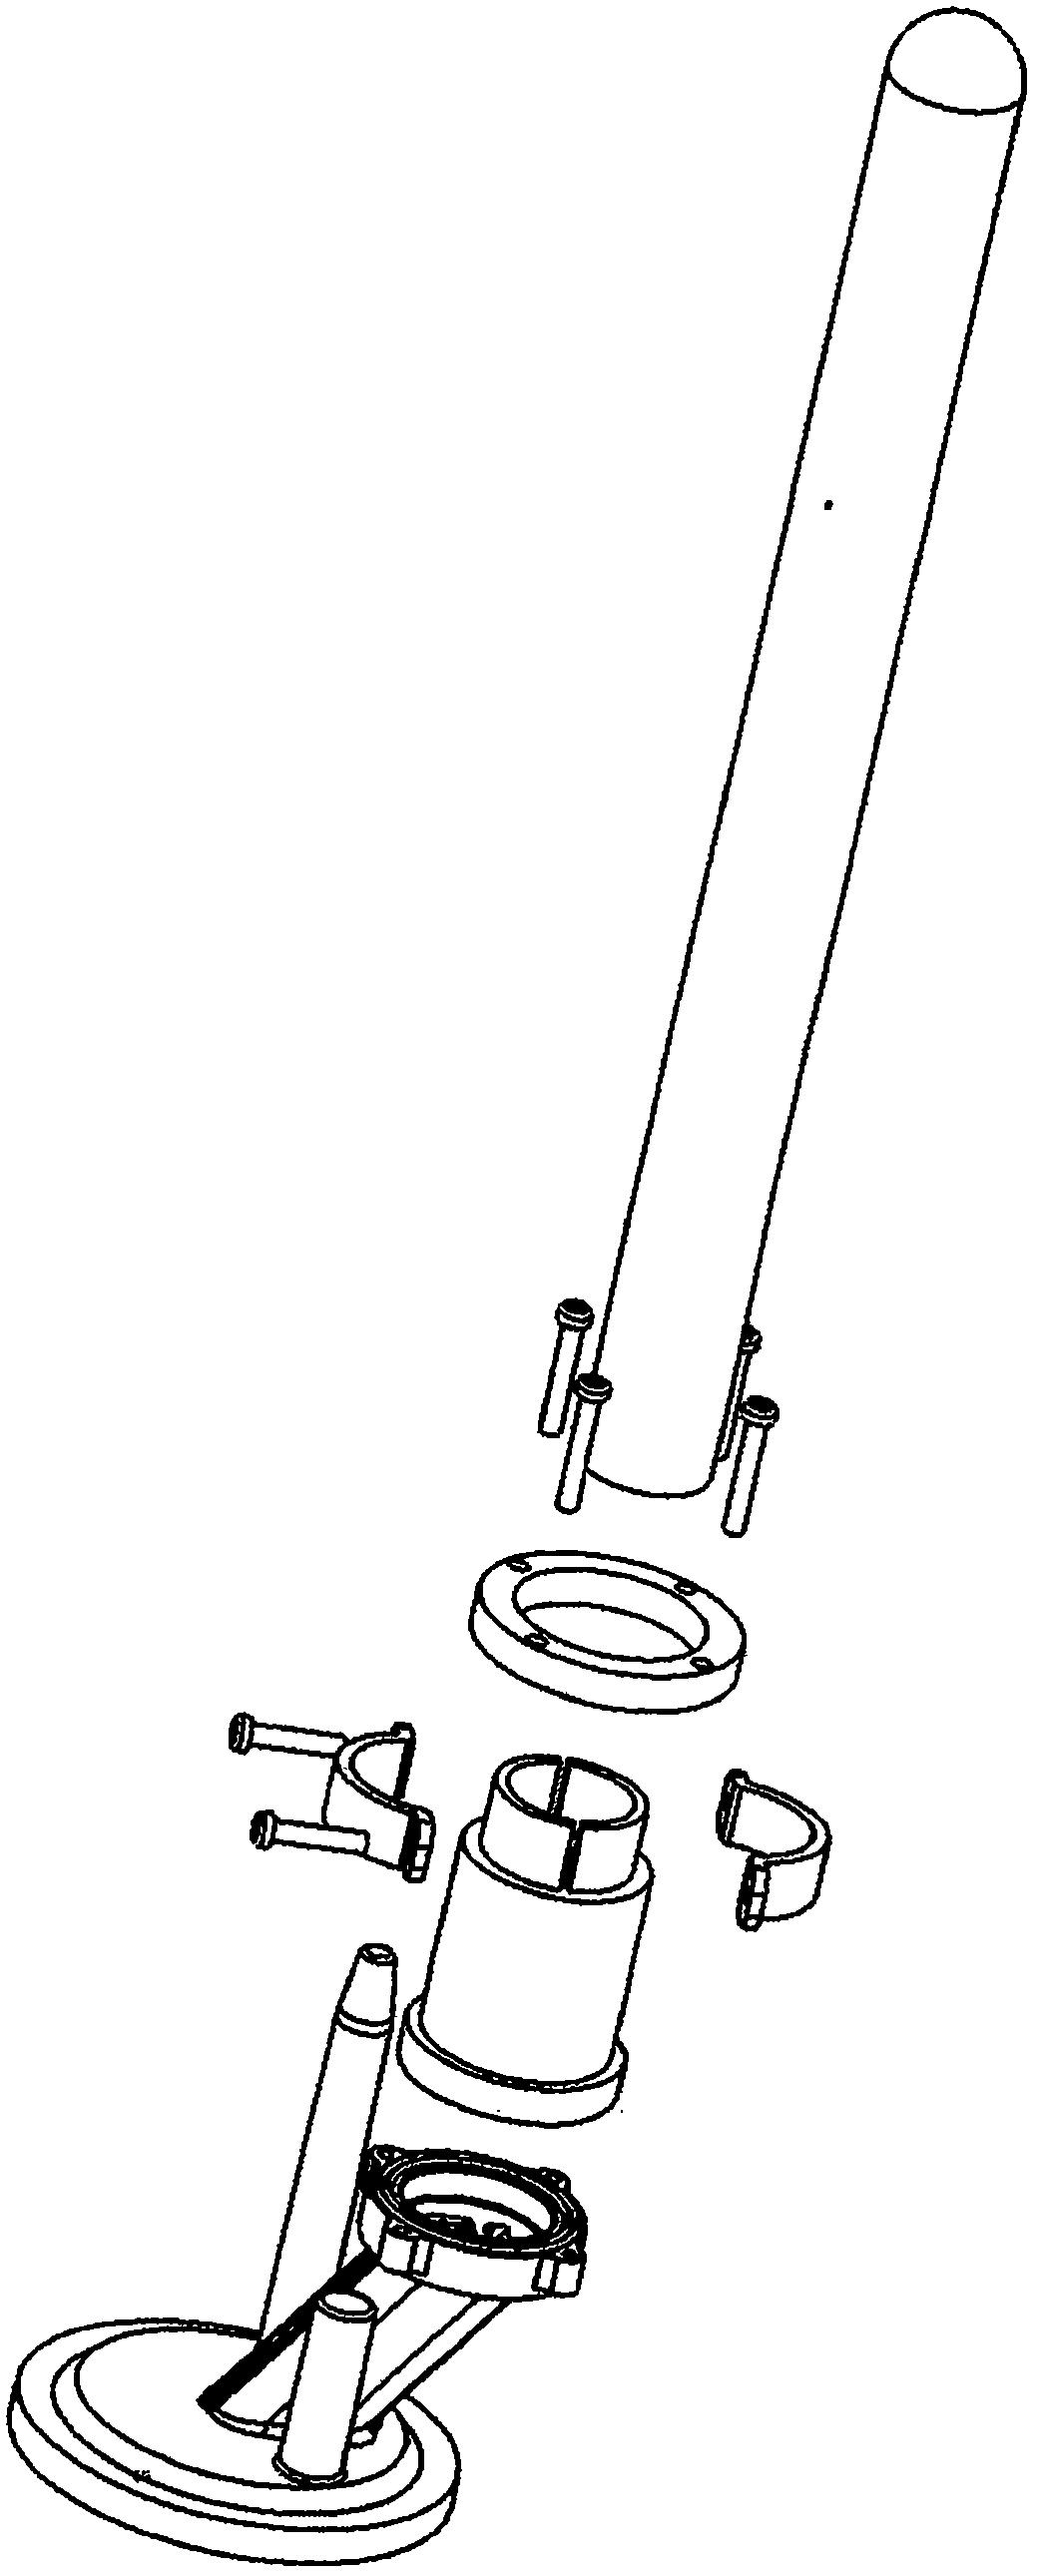 管状加热器(5)的外壳为非金属盲孔管或弯曲成u形的管,内装电热丝(3)或